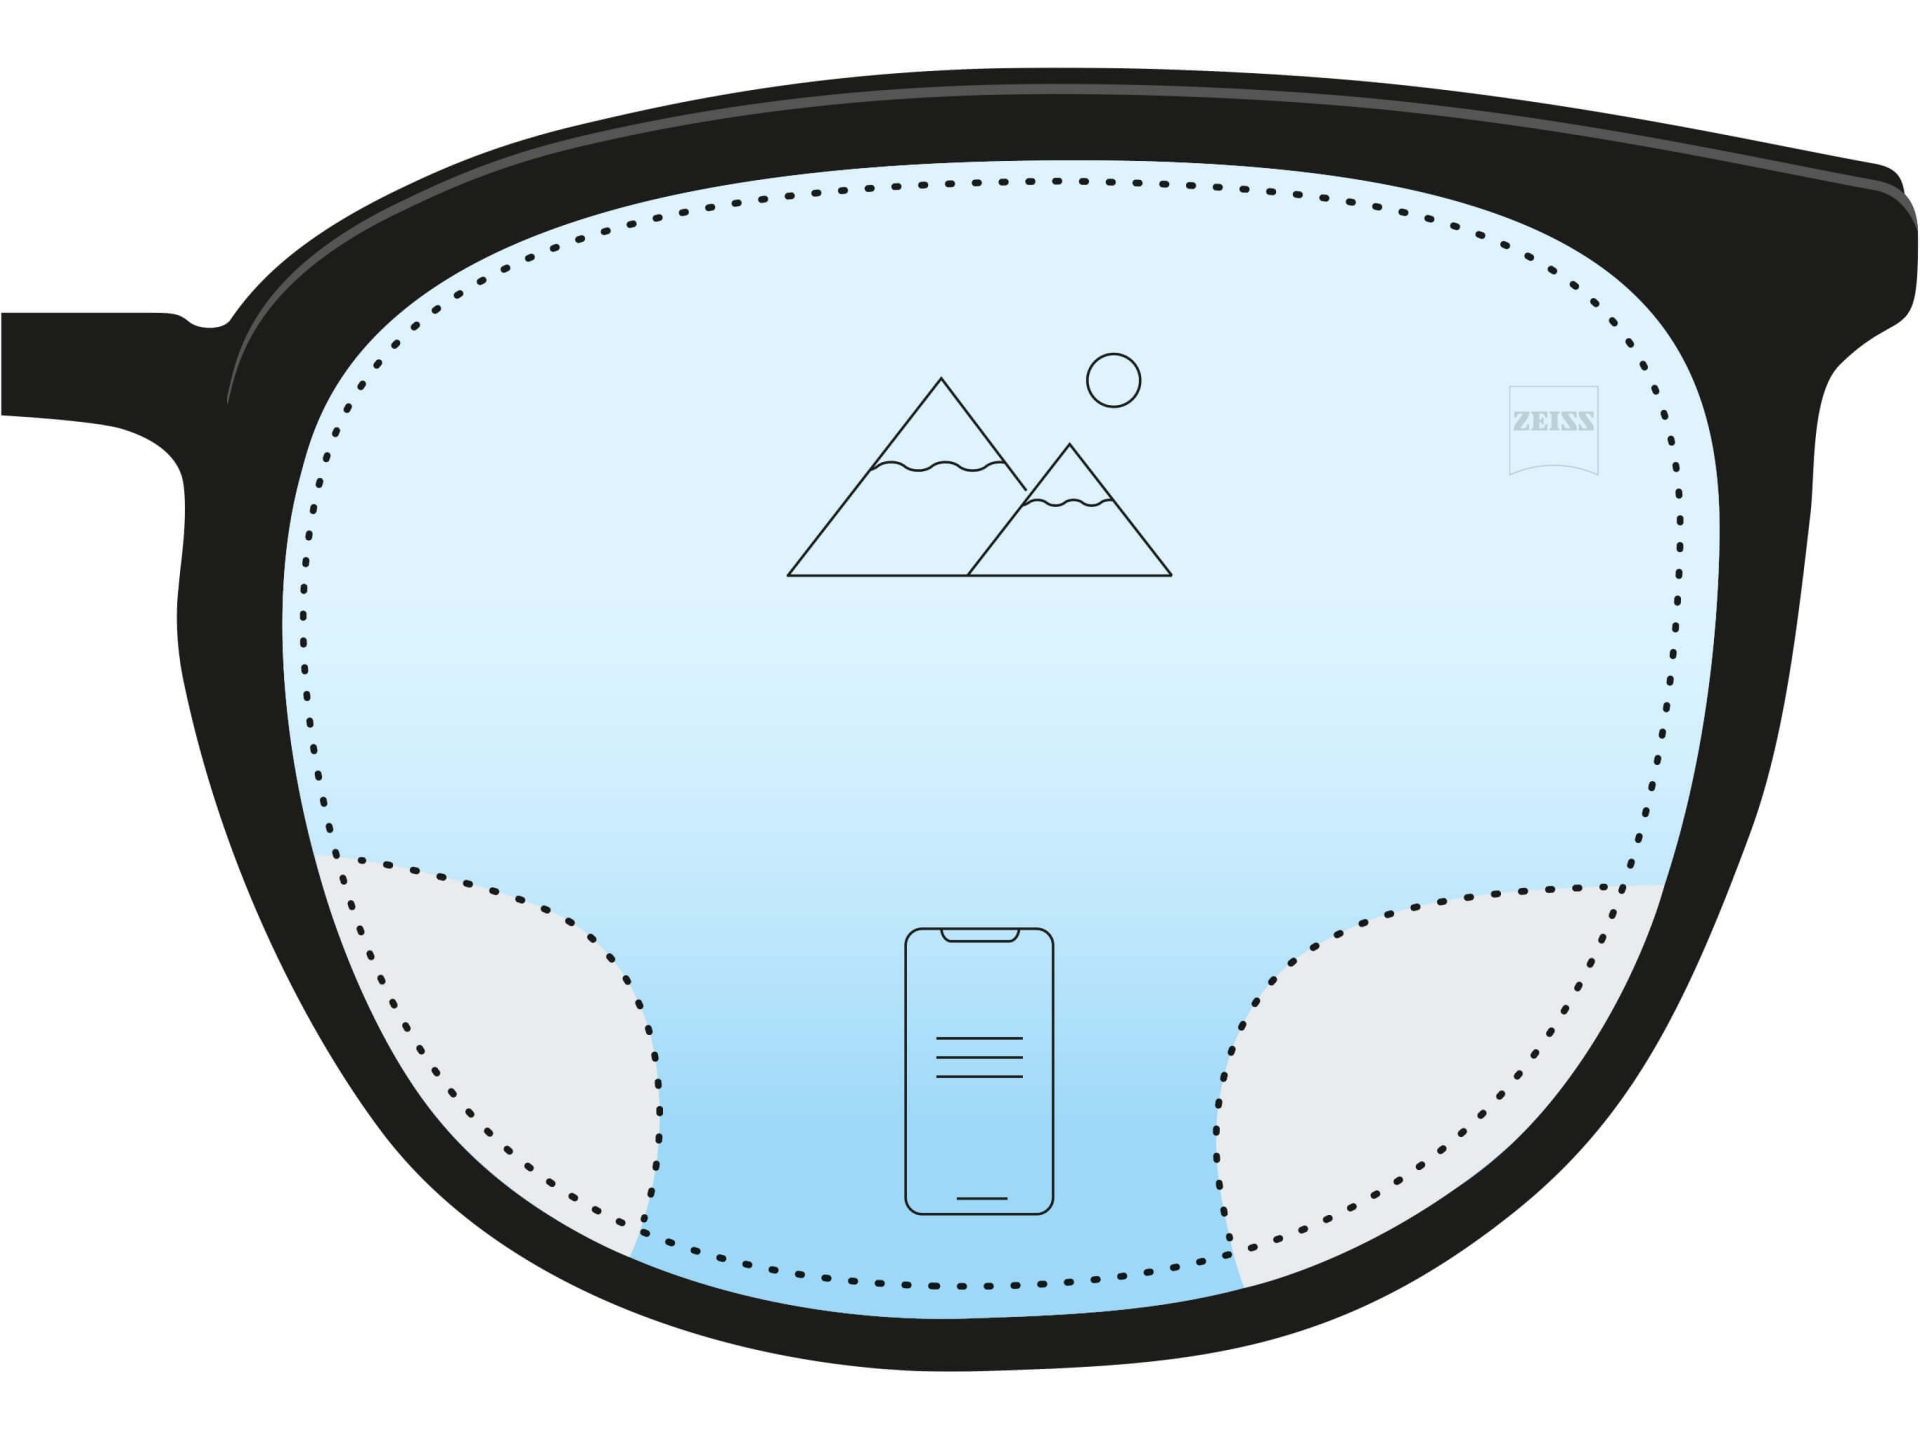 防视觉疲劳镜片的插图 镜片从底部深蓝色渐变至顶部浅蓝色且镜片上有 2 个图标，表示镜片的绝大部分具有统一的近视度数，而底部的小块区域则具有帮助近距离观察的下加光。